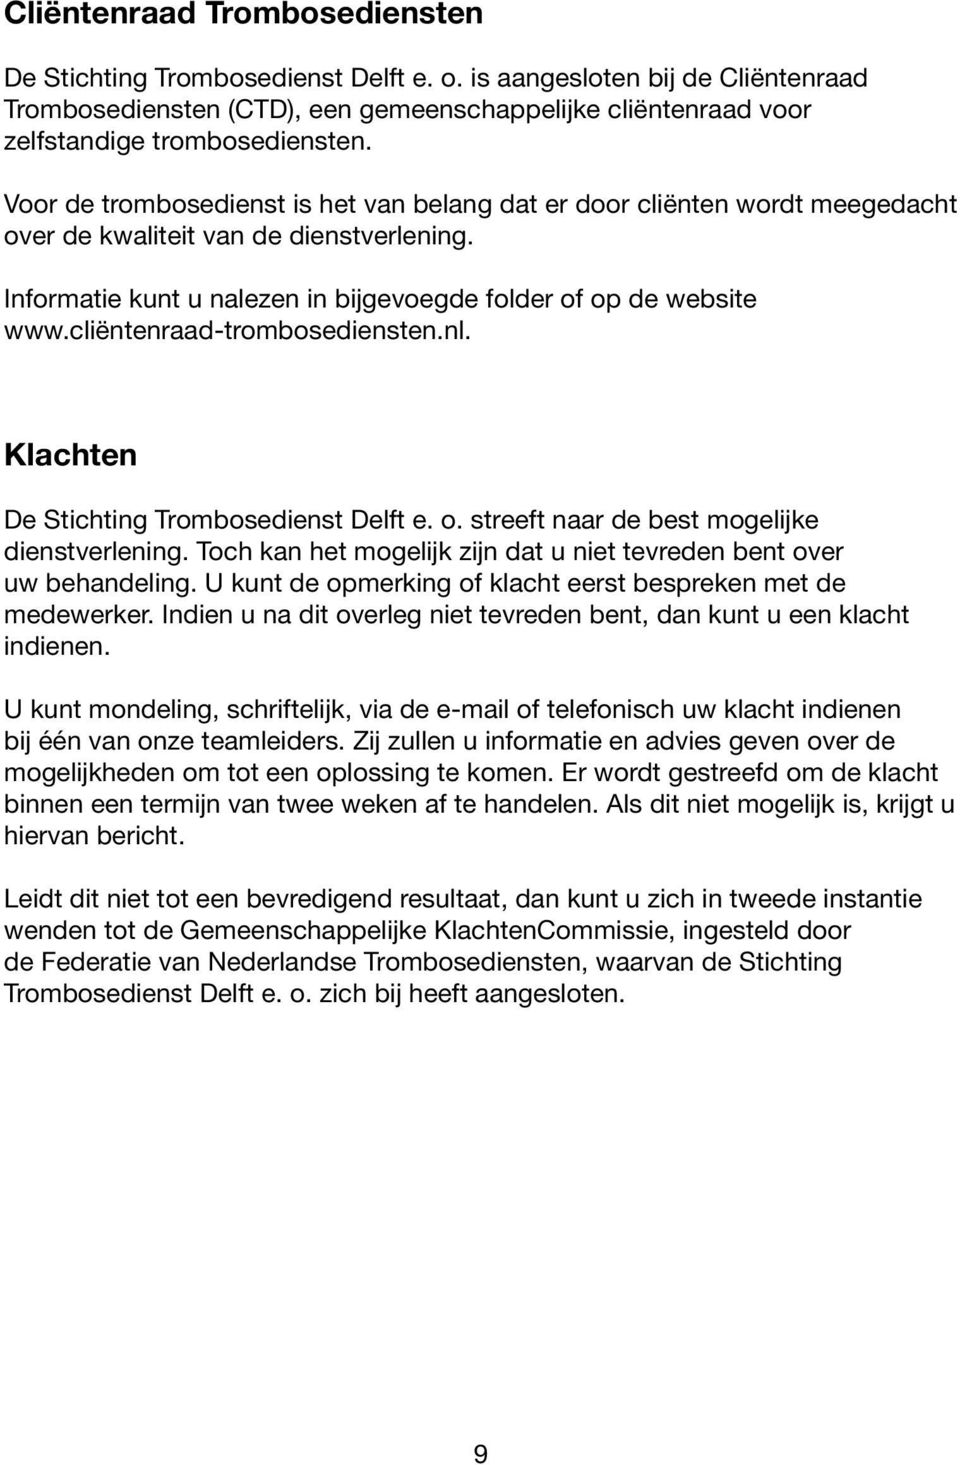 cliëntenraad-trombosediensten.nl. Klachten De Stichting Trombosedienst Delft e. o. streeft naar de best mogelijke dienstverlening.